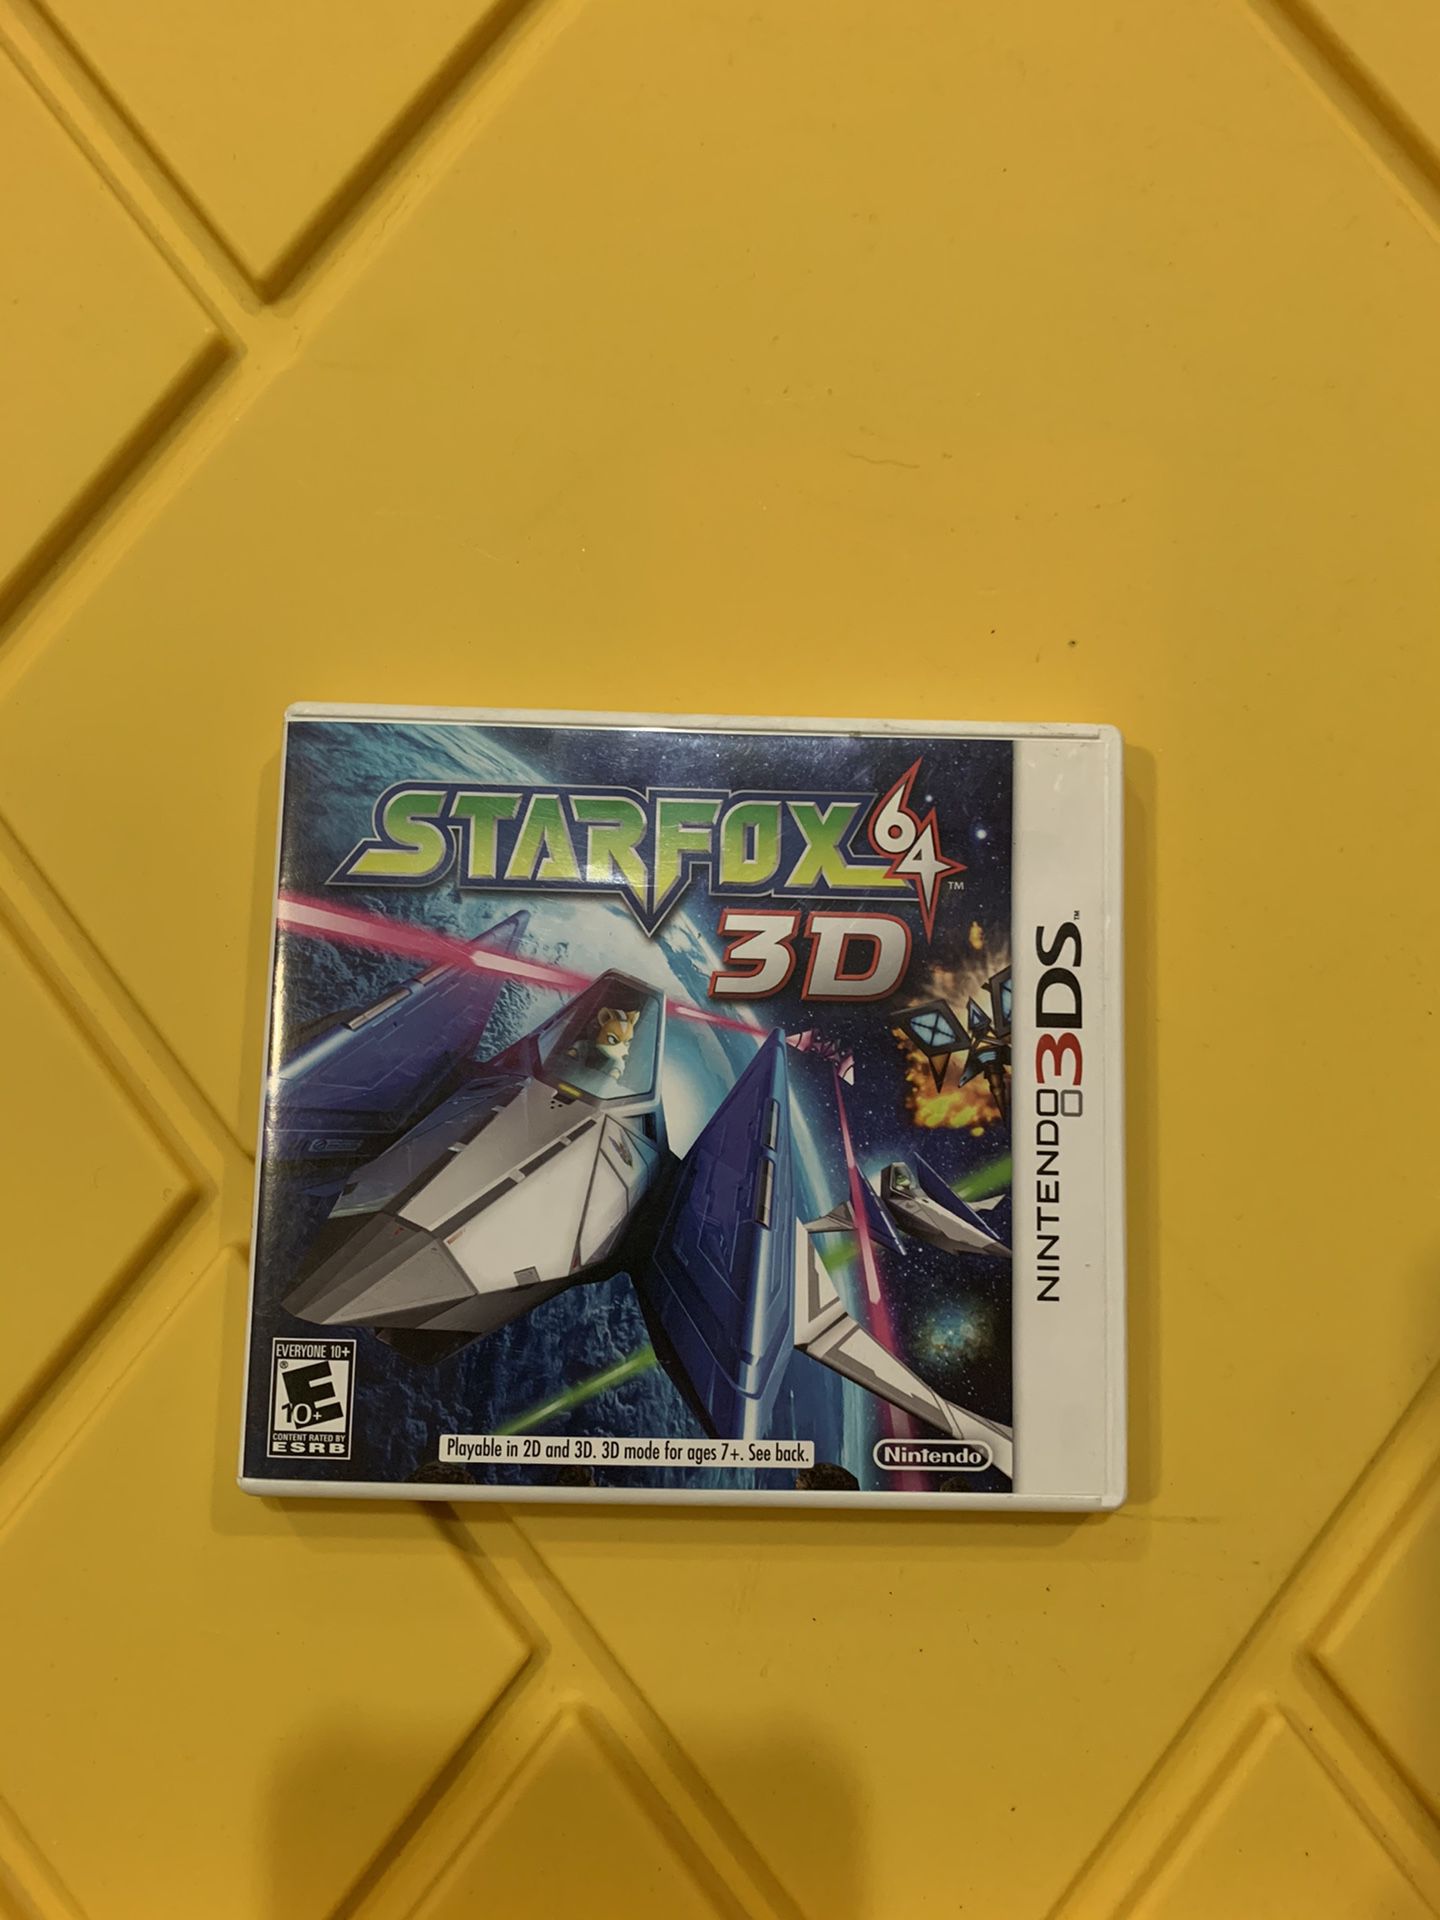 Starfox 64, 3d for 3ds